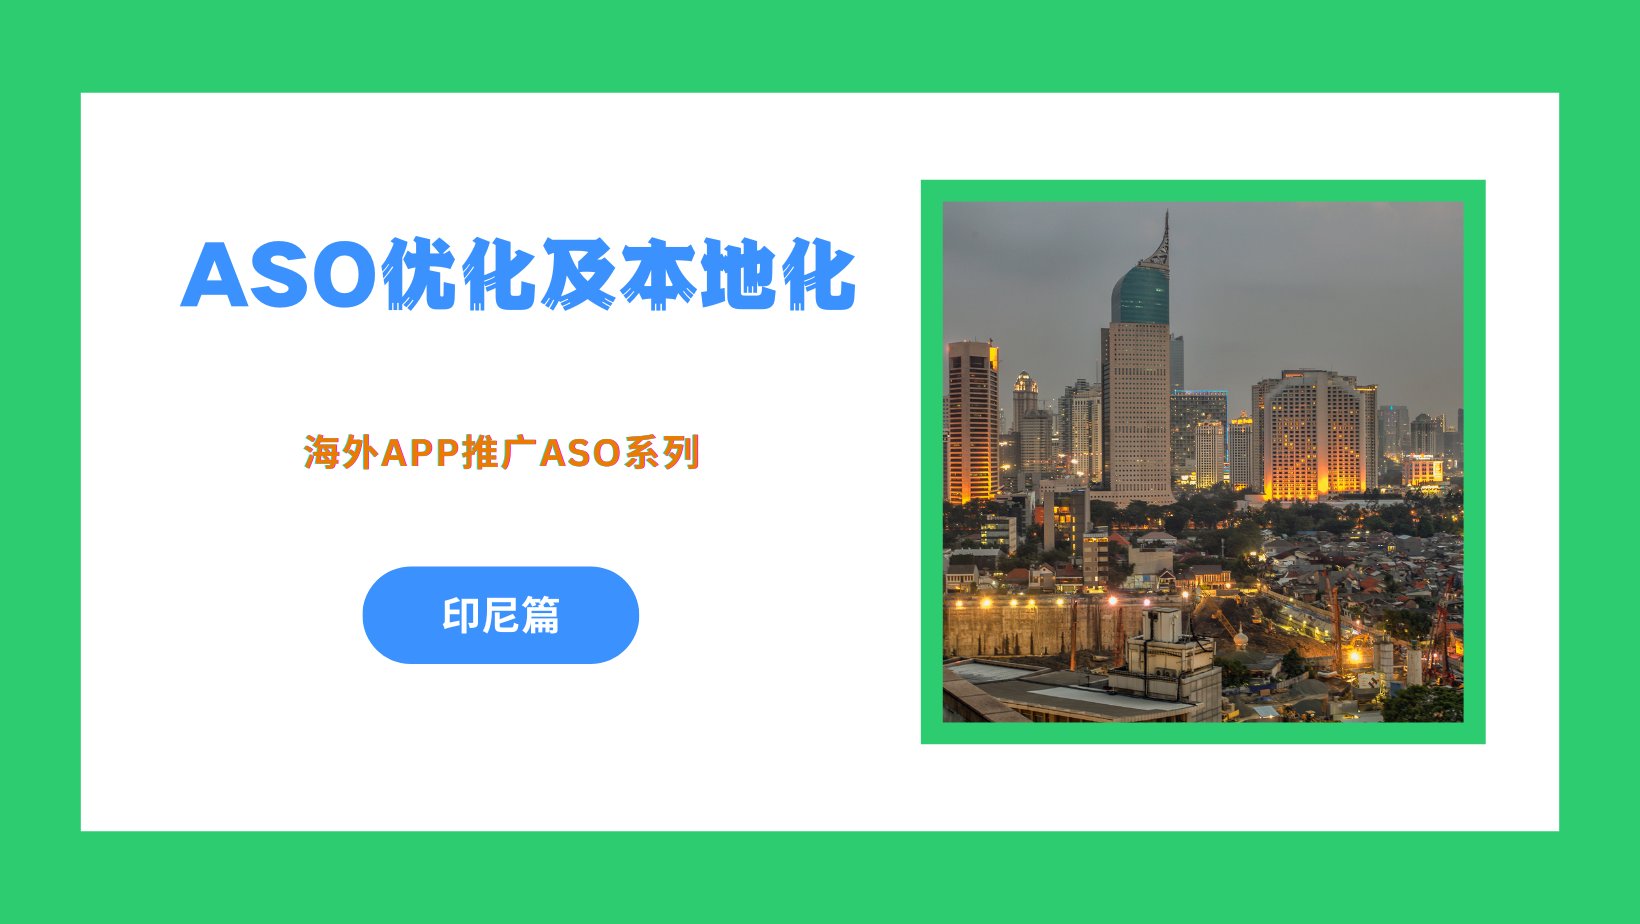 海外App推广之ASO优化及本地化 – 印尼篇